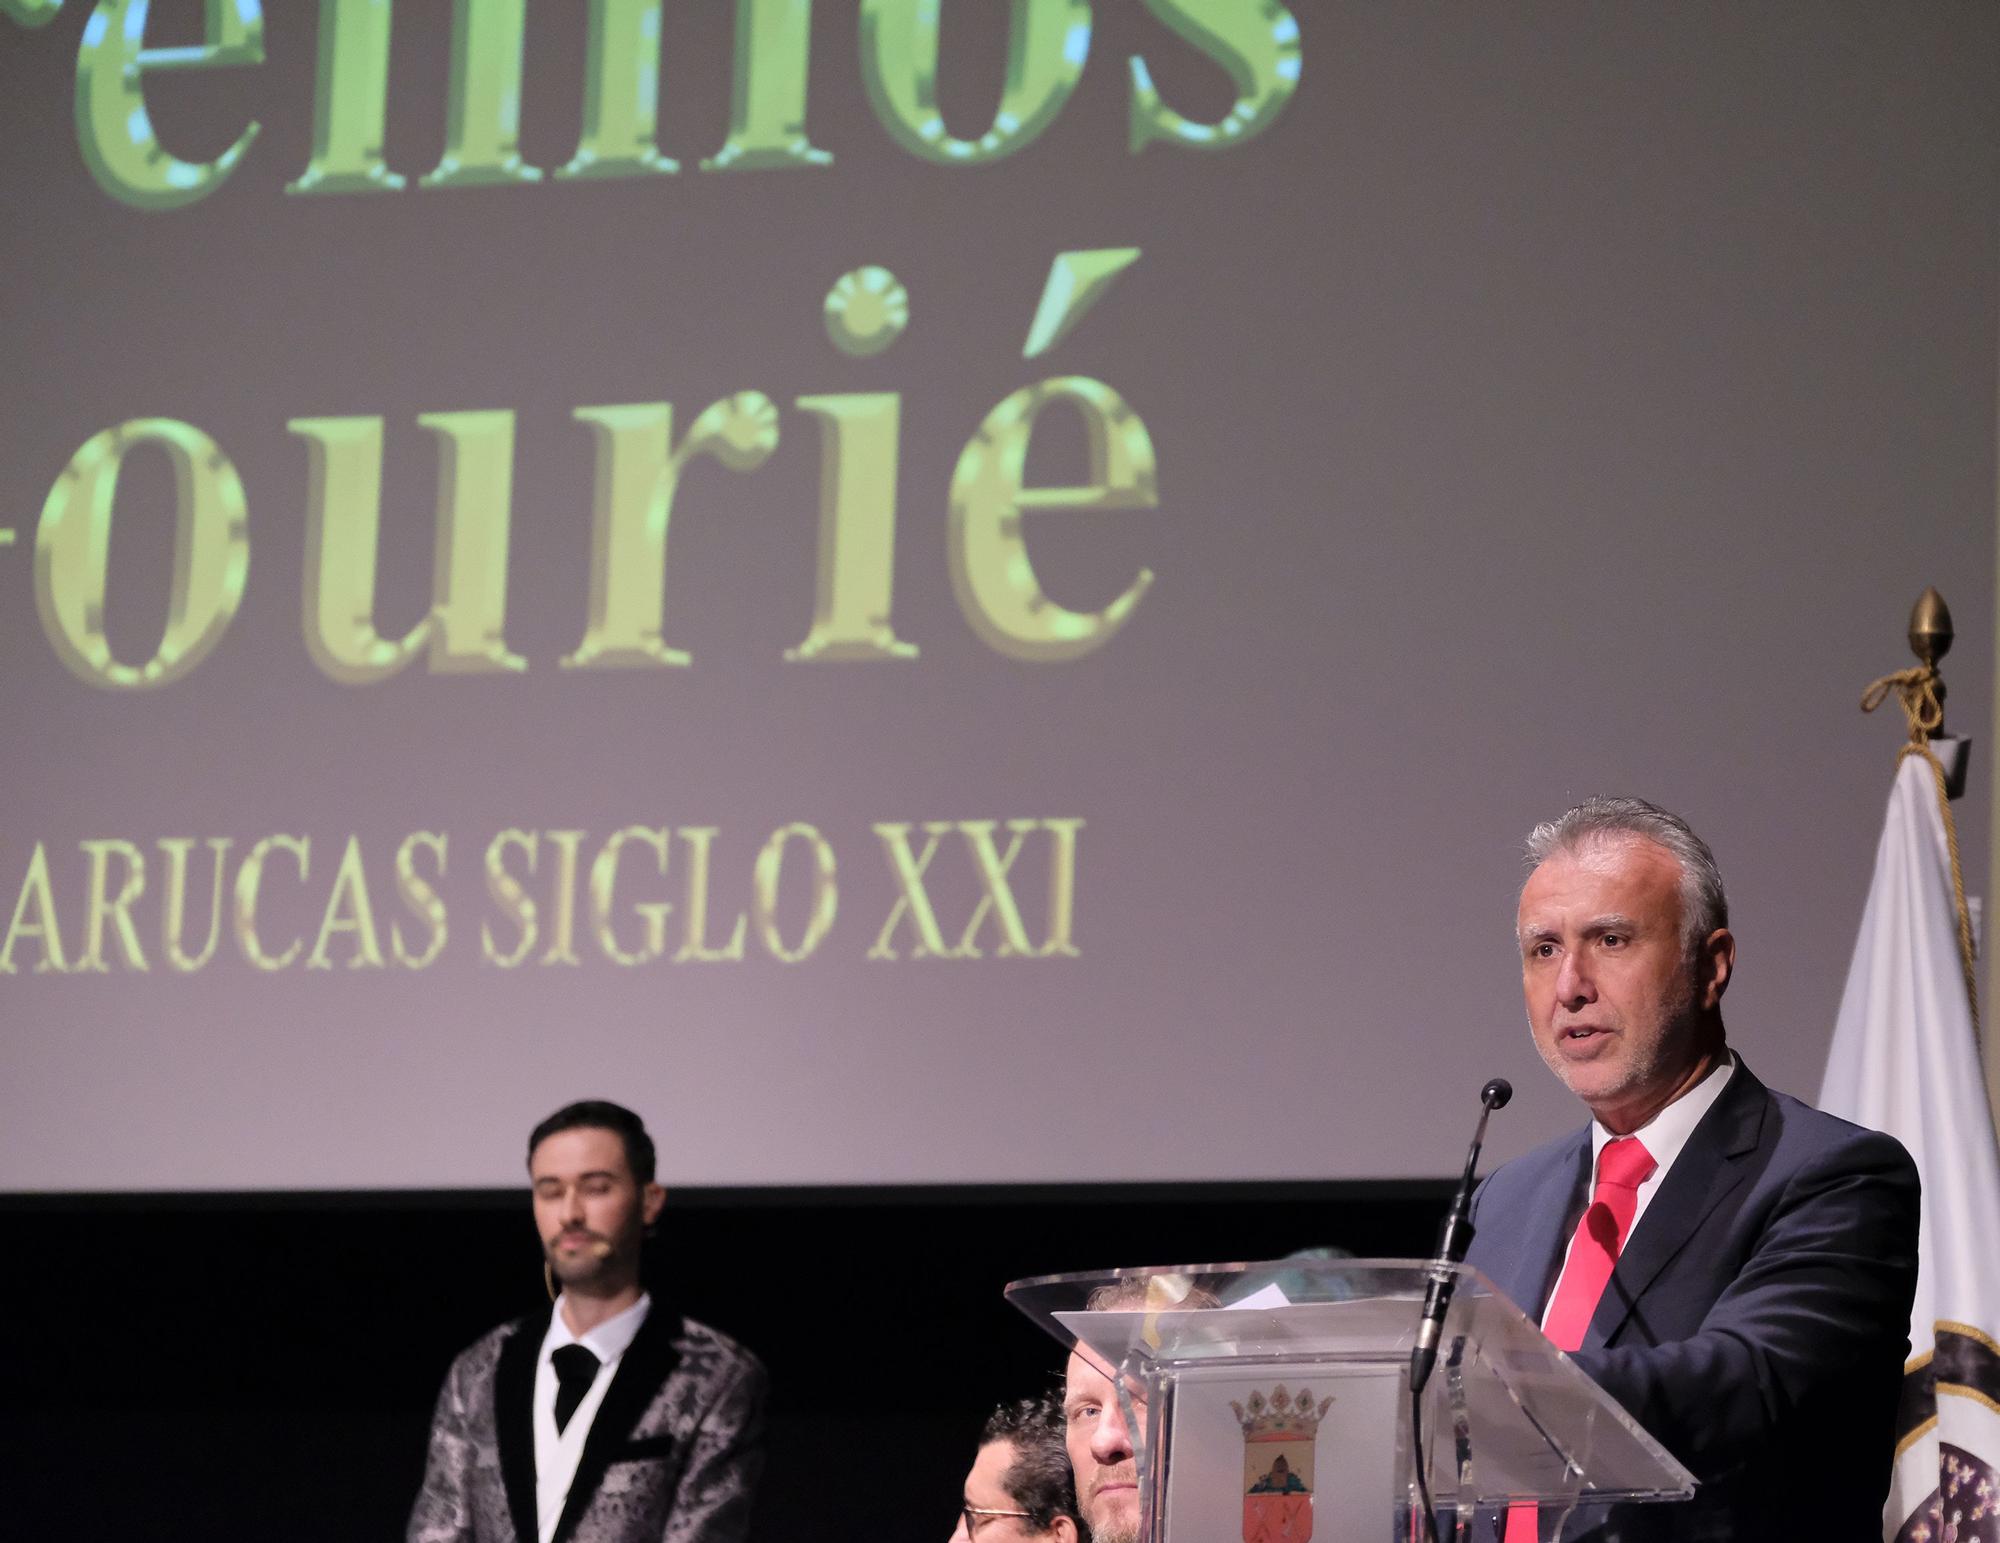 El presidente Torres recibe uno de los premios de Honor Gourié 2022